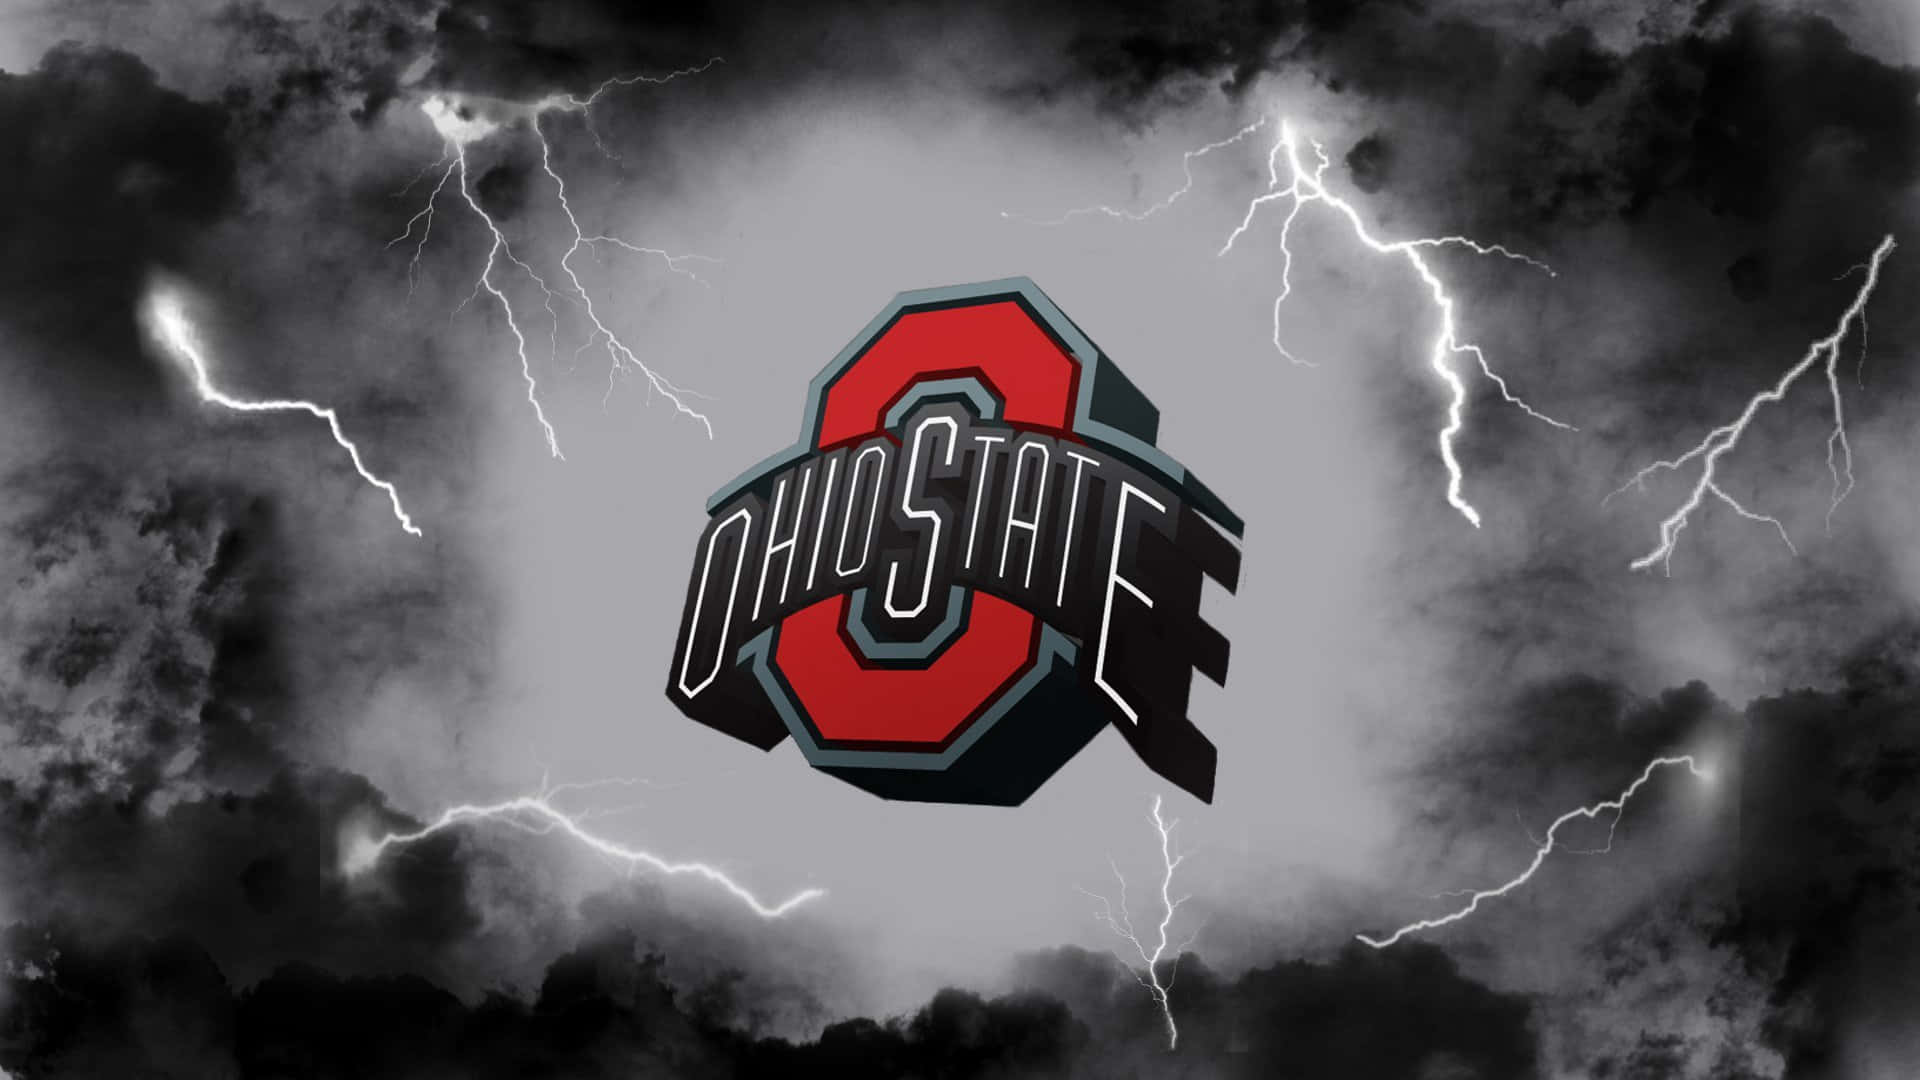 Logotipode Ohio State Con Nube De Tormenta Y Rayos Fondo de pantalla